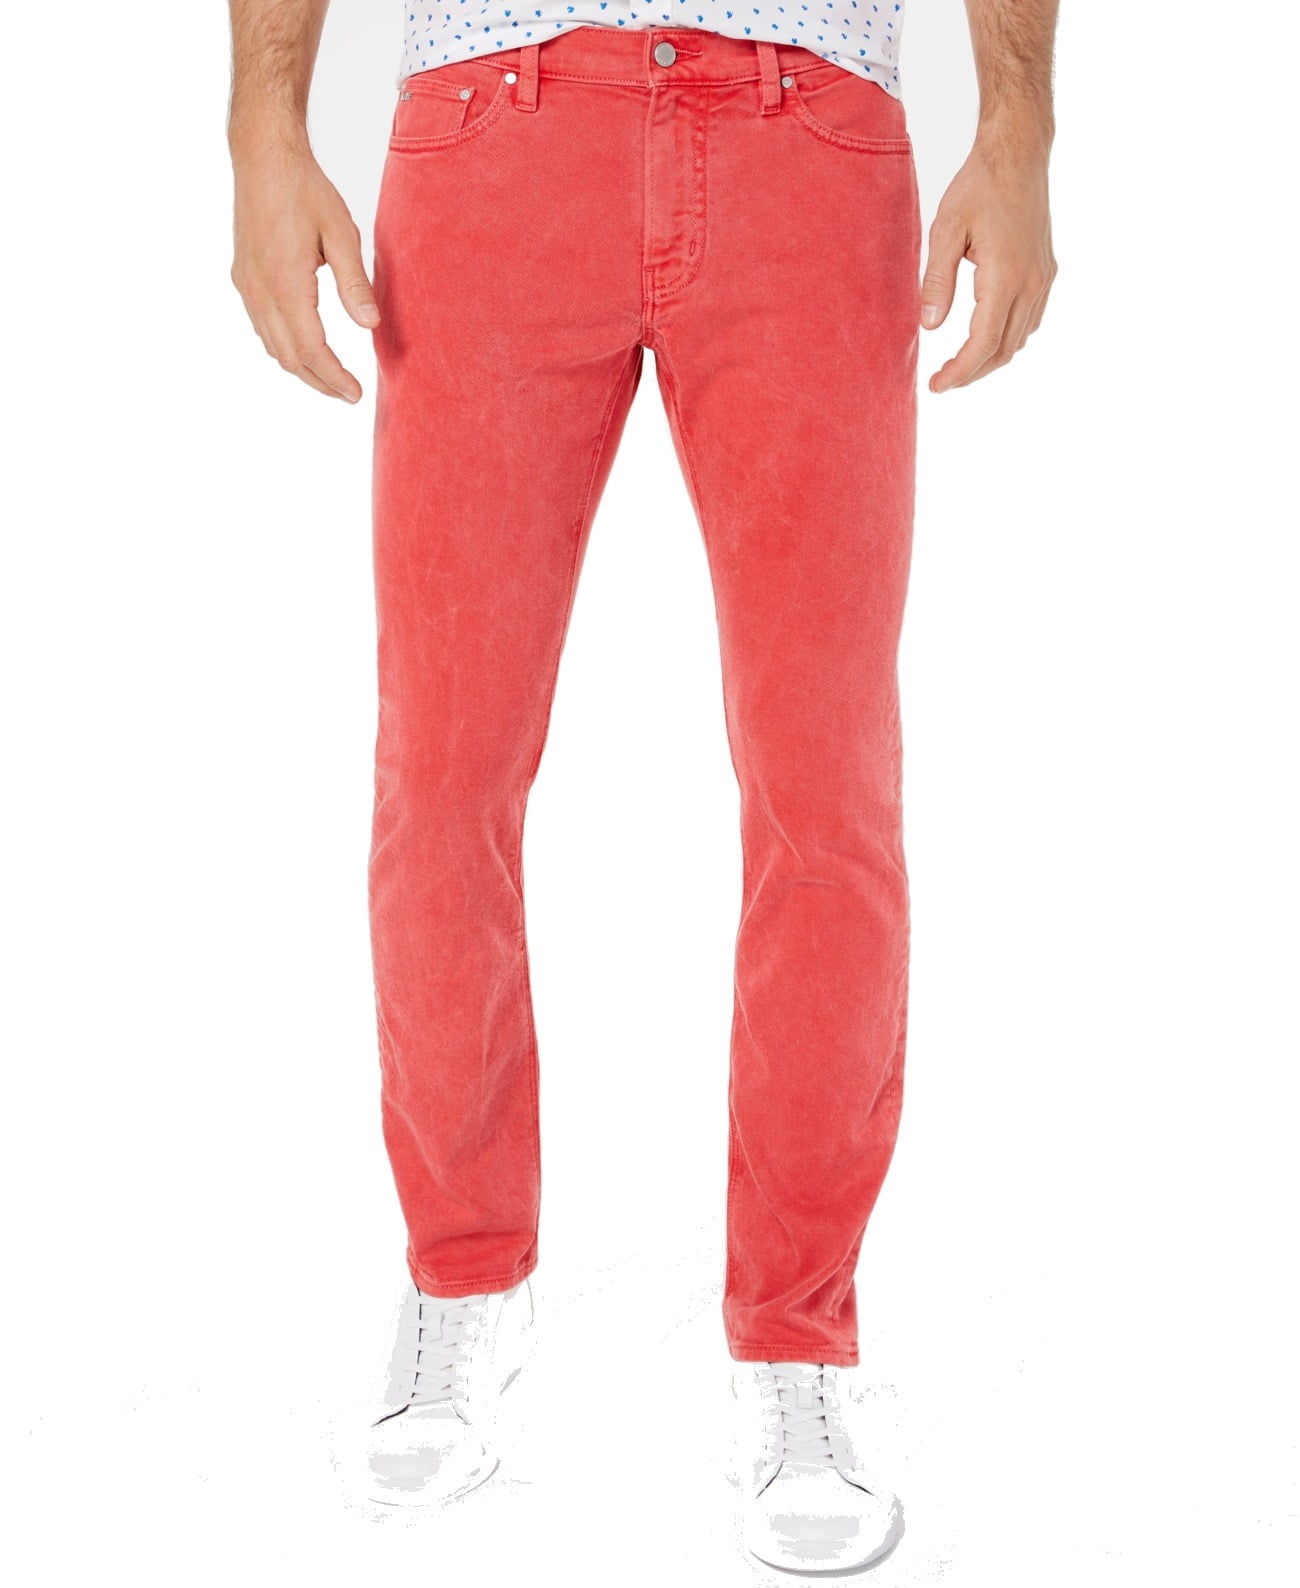 Michael Kors Mens Jeans - Walmart.com